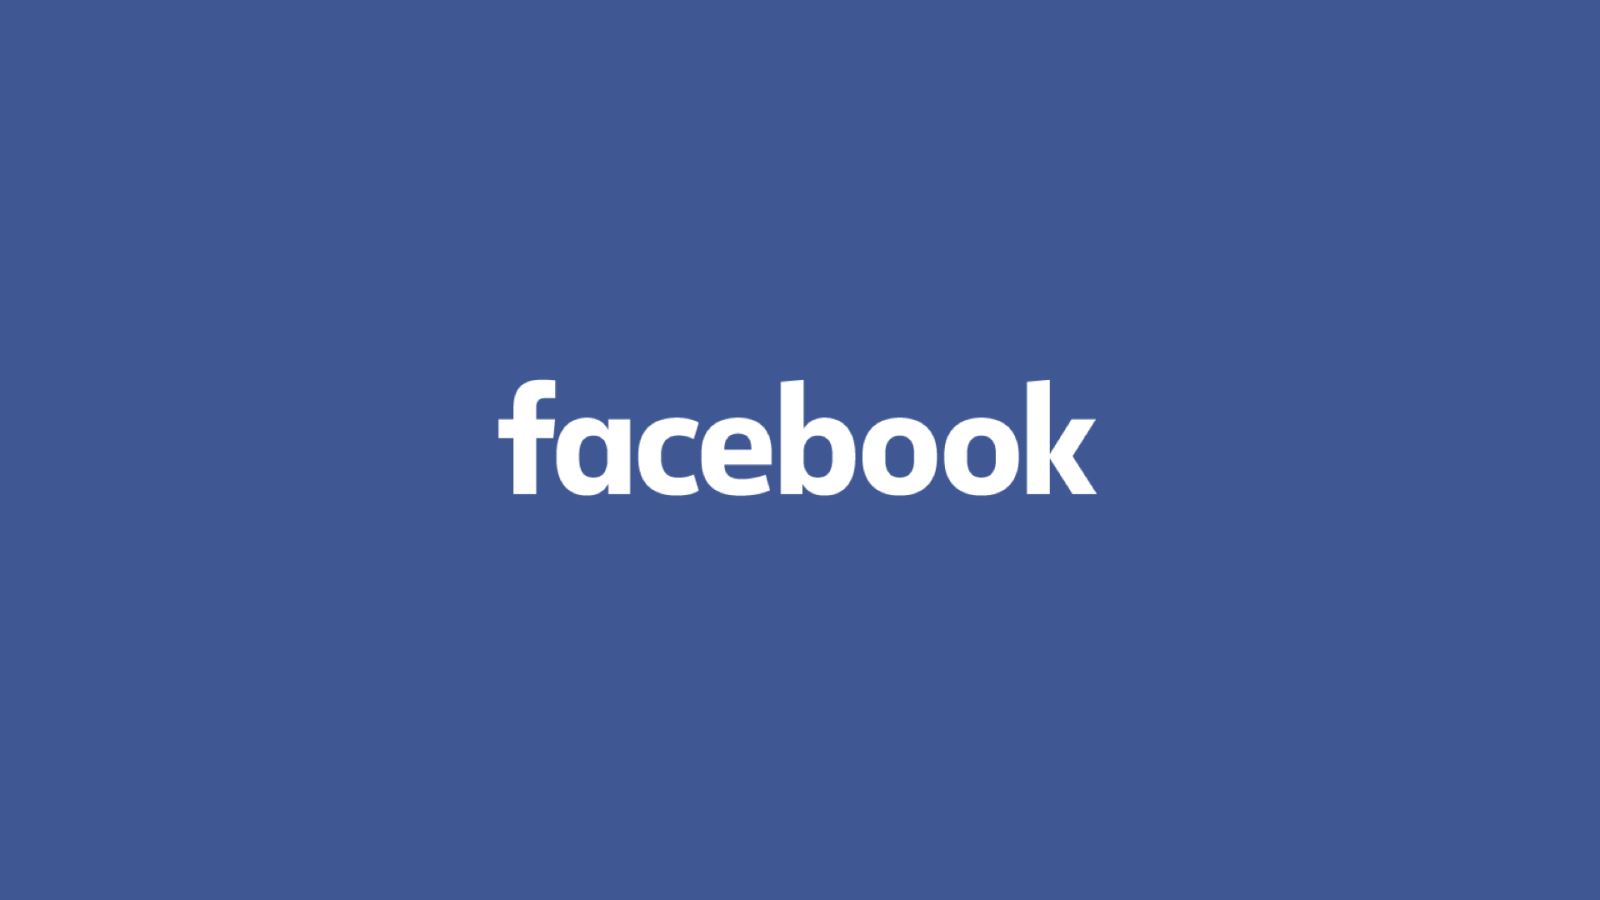 Facebook là ứng dụng mãng xã hội phổ biến thứ hai